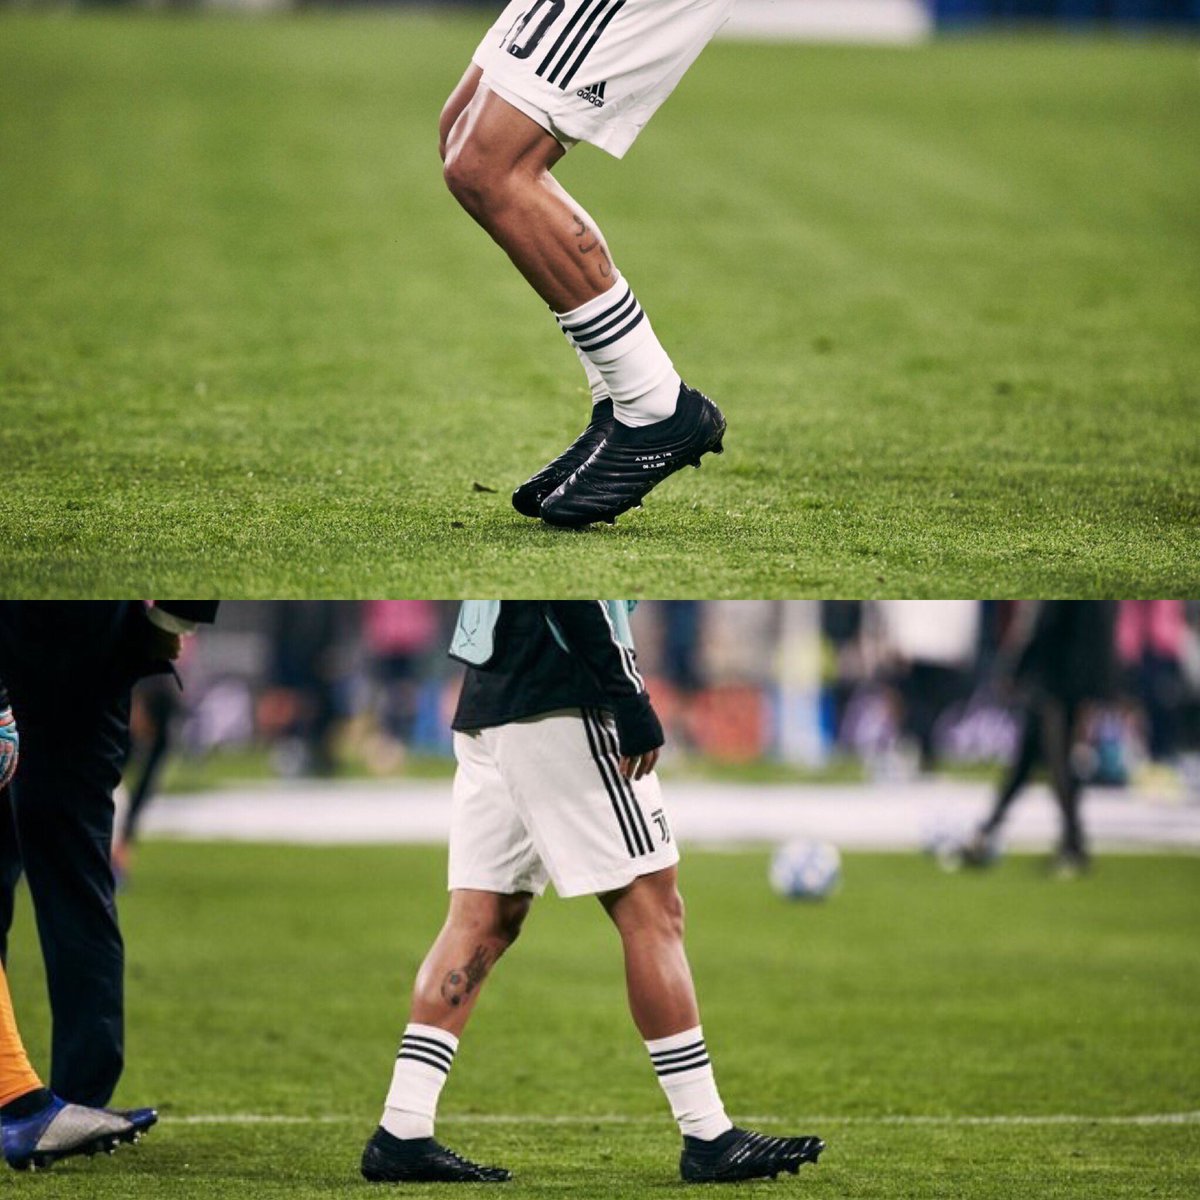 Mundialistas Twitter पर: "Las botas Adidas Copa 19+ que Paulo Dybala portó en el partido ante el Manchester United. Elegancia pura. https://t.co/XAAOX11bmn" /